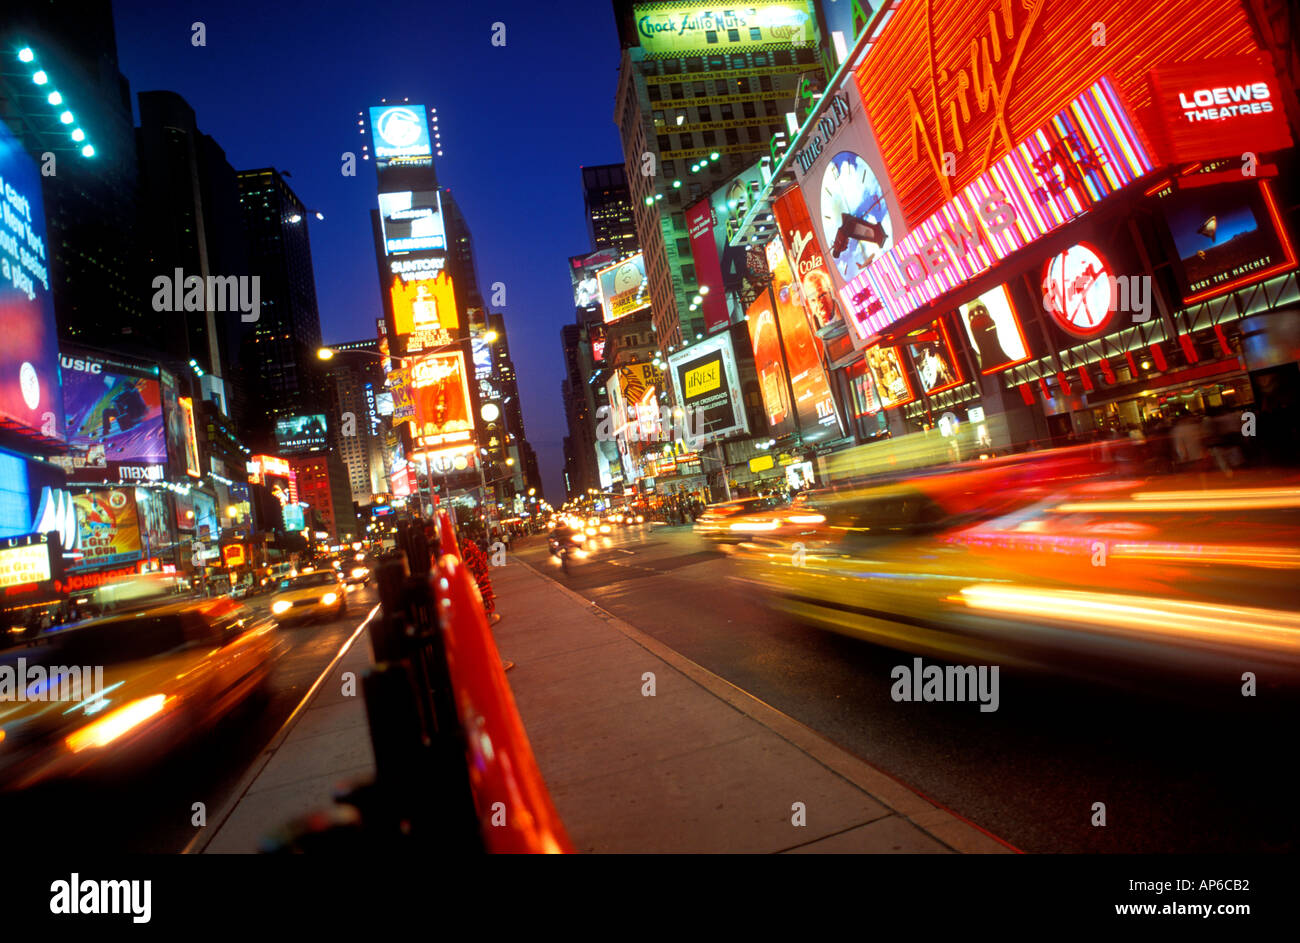 Neonlichter am New York Times Square in den 1990er Jahren Taxifahrer, die nachts beschäftigt sind, leuchten in Manhattan New York City America USA Vintage Retro Americana Stockfoto